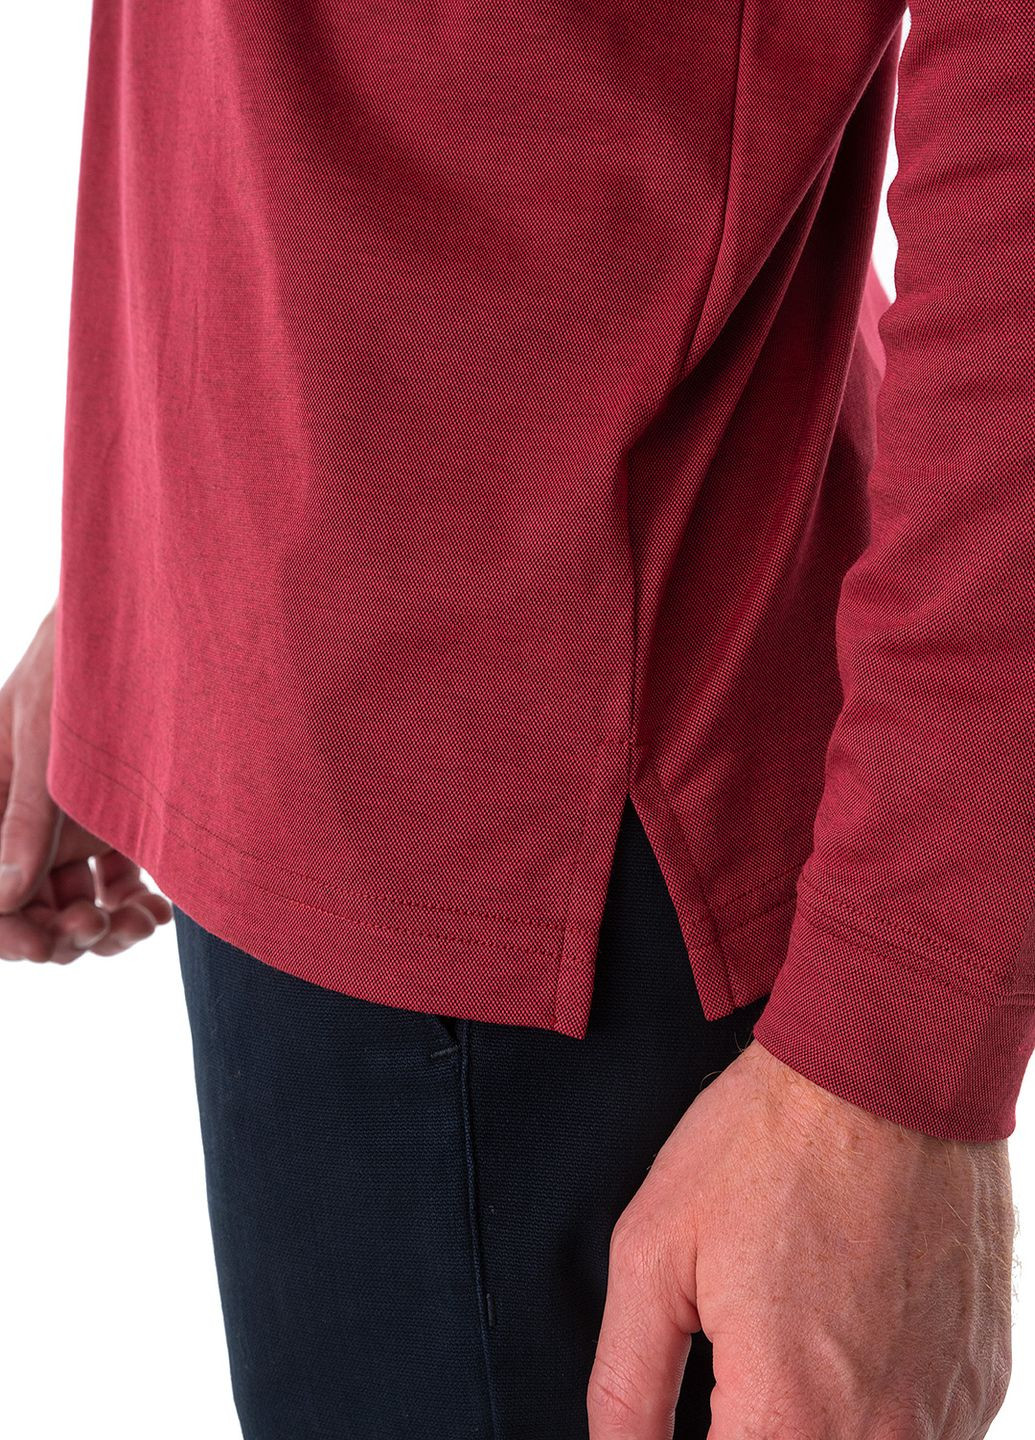 Бордовая футболка-поло для мужчин Ragman меланжевая